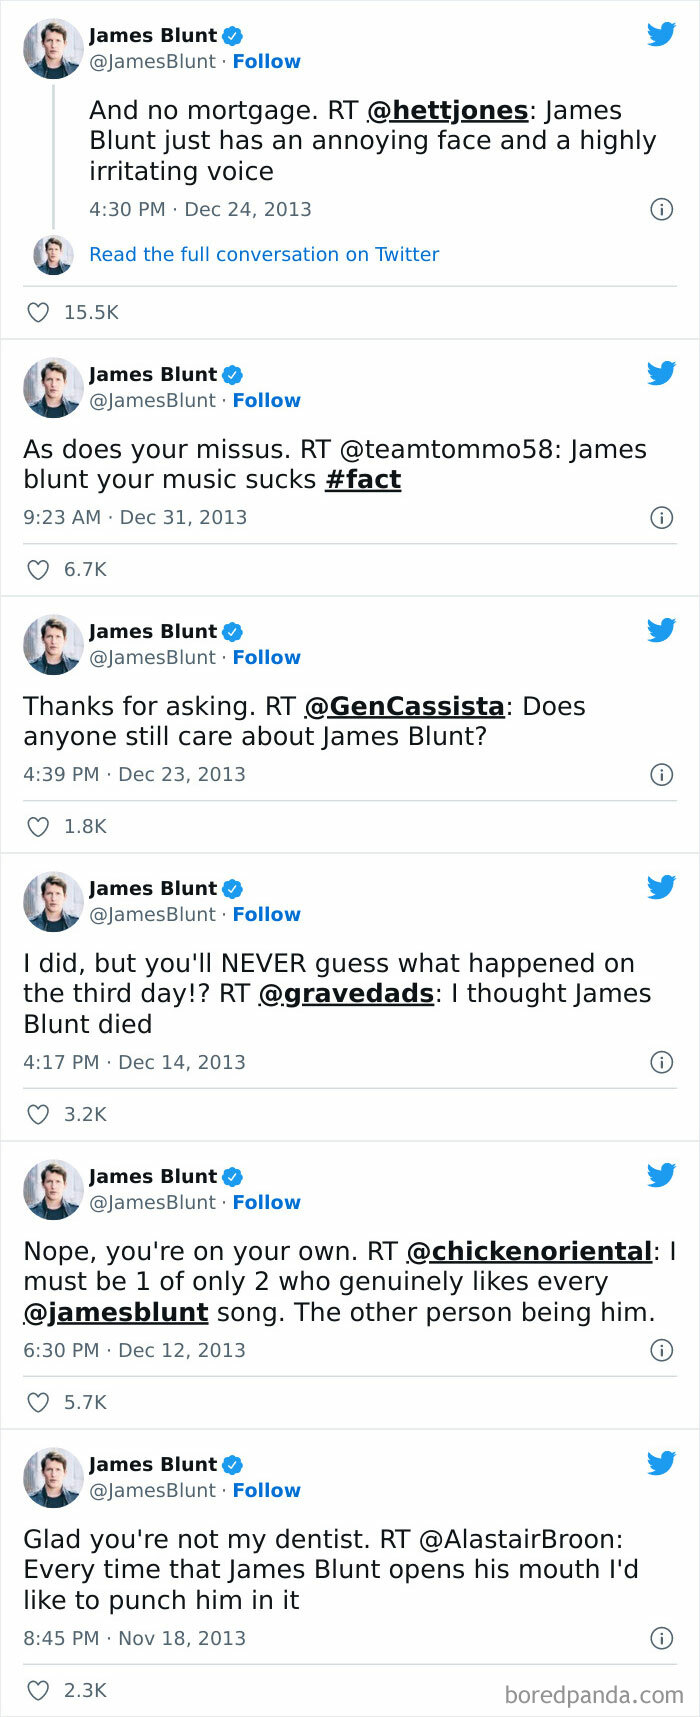 James Blunt's Twitter Presence